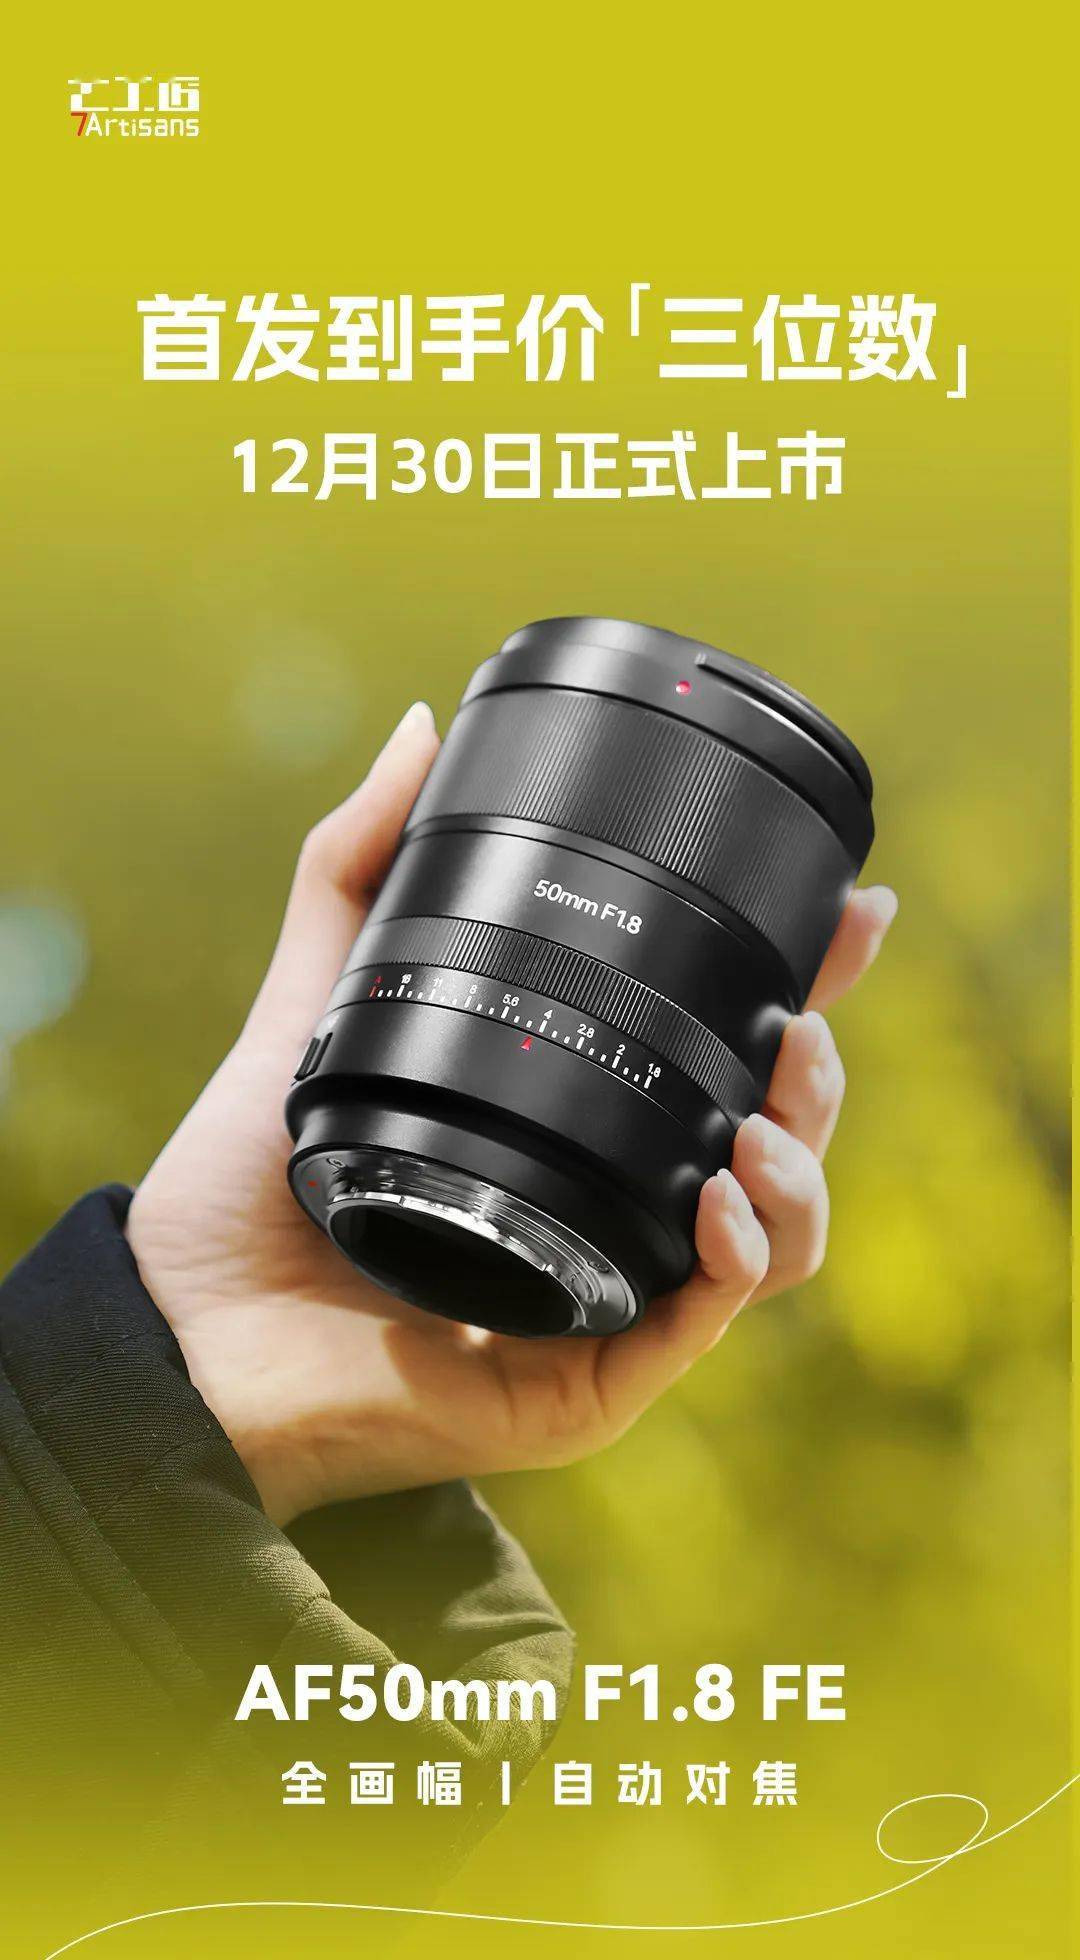     七工匠确认首款自动对焦镜头50mm F1.8将于12月30日上市 